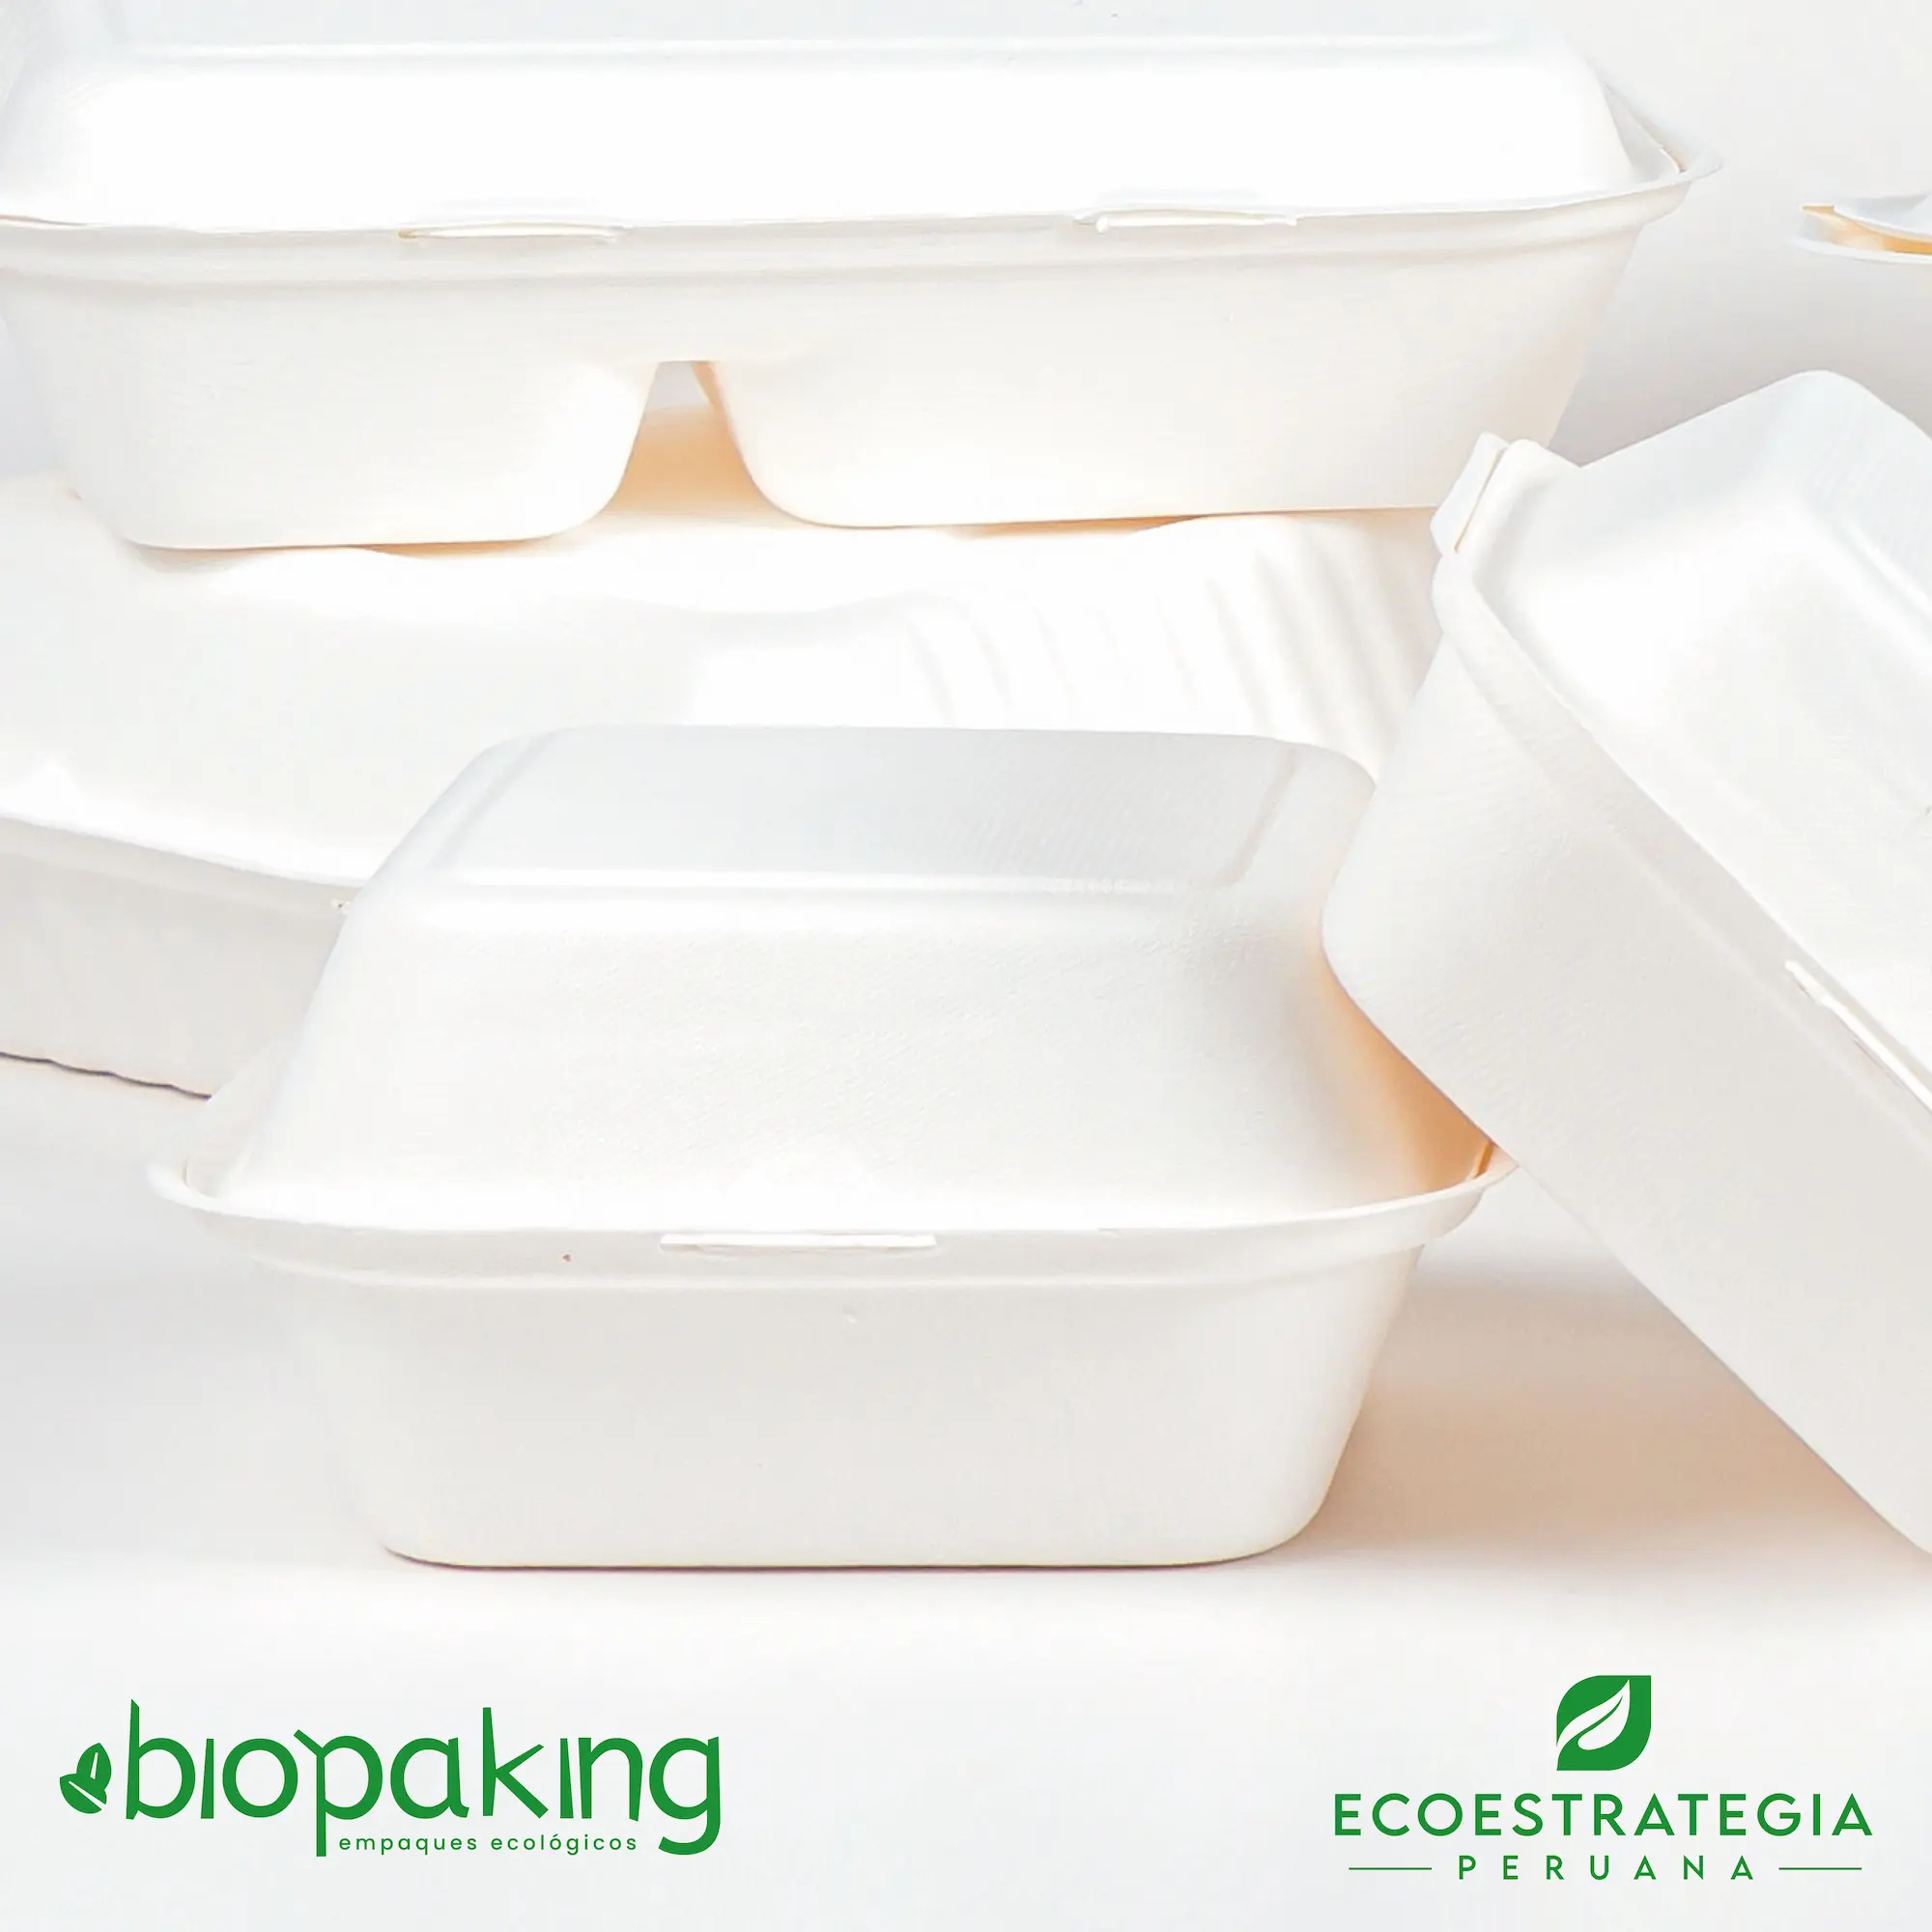 Este envase biodegradable CT4 tiene una capacidad de 500ml. Taper biodegradable a base del bagazo de fibra de caña de azúcar, empaques de gramaje ideal para comidas frías y calientes